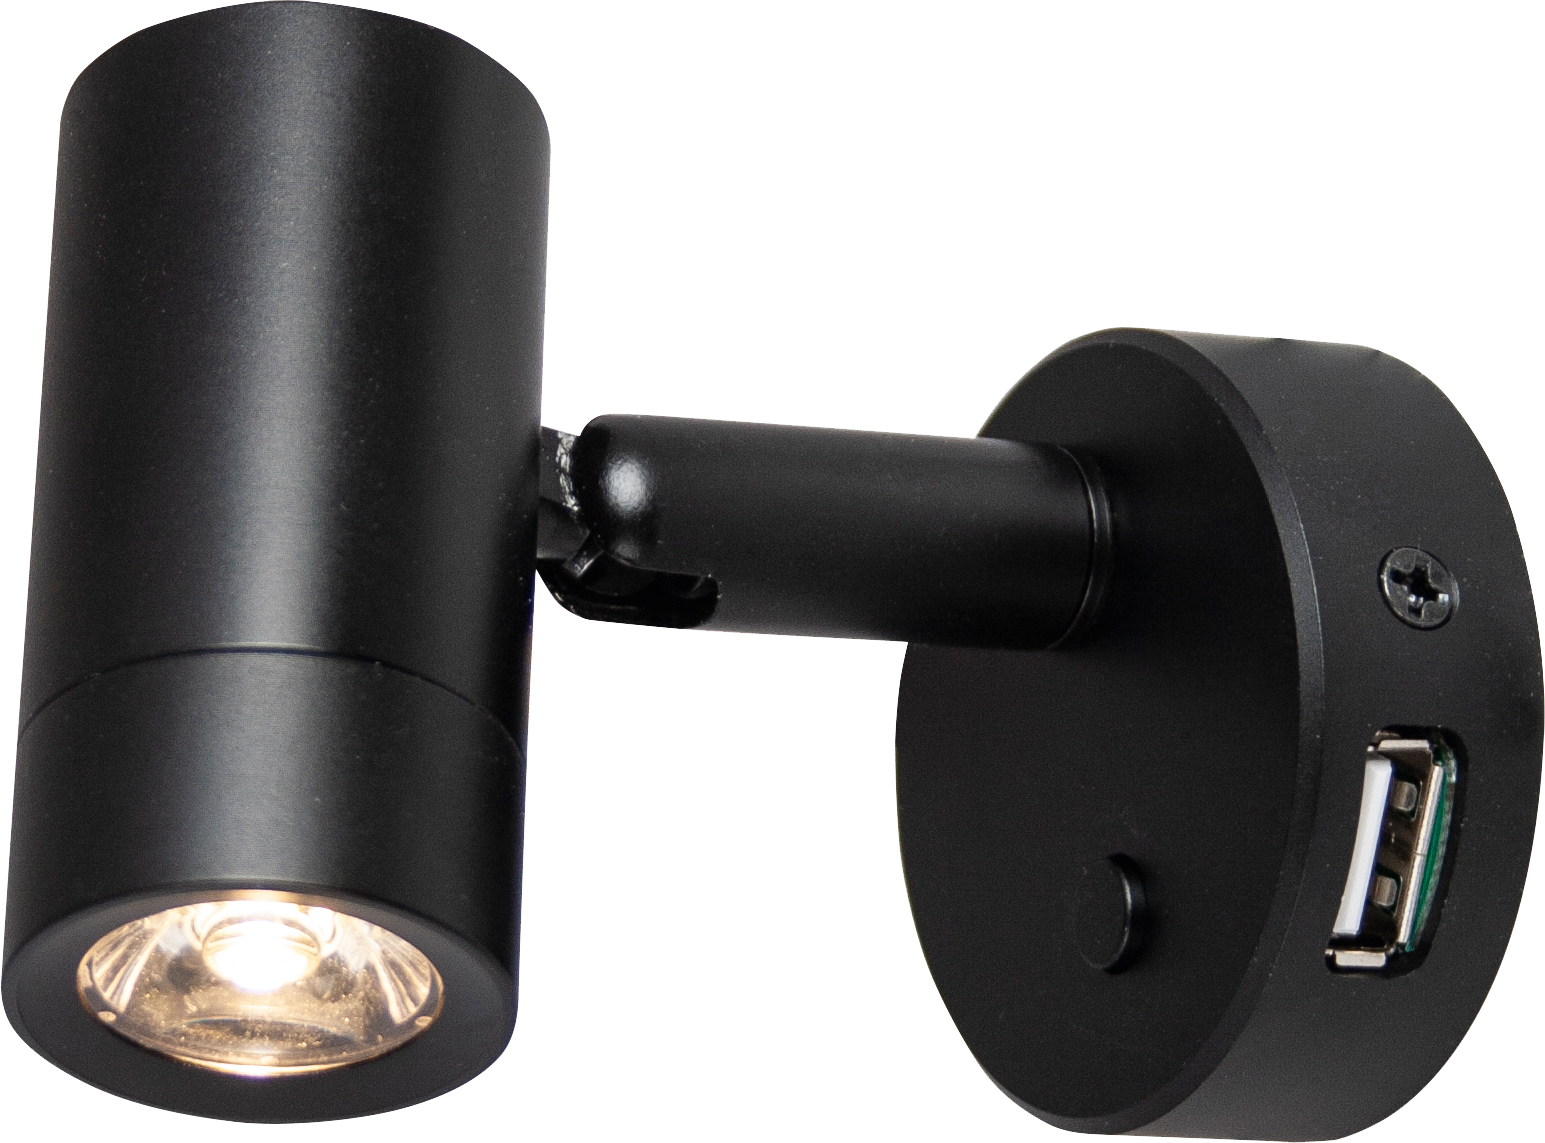 LED-Spot Mini Tube D4 satin-schwarz